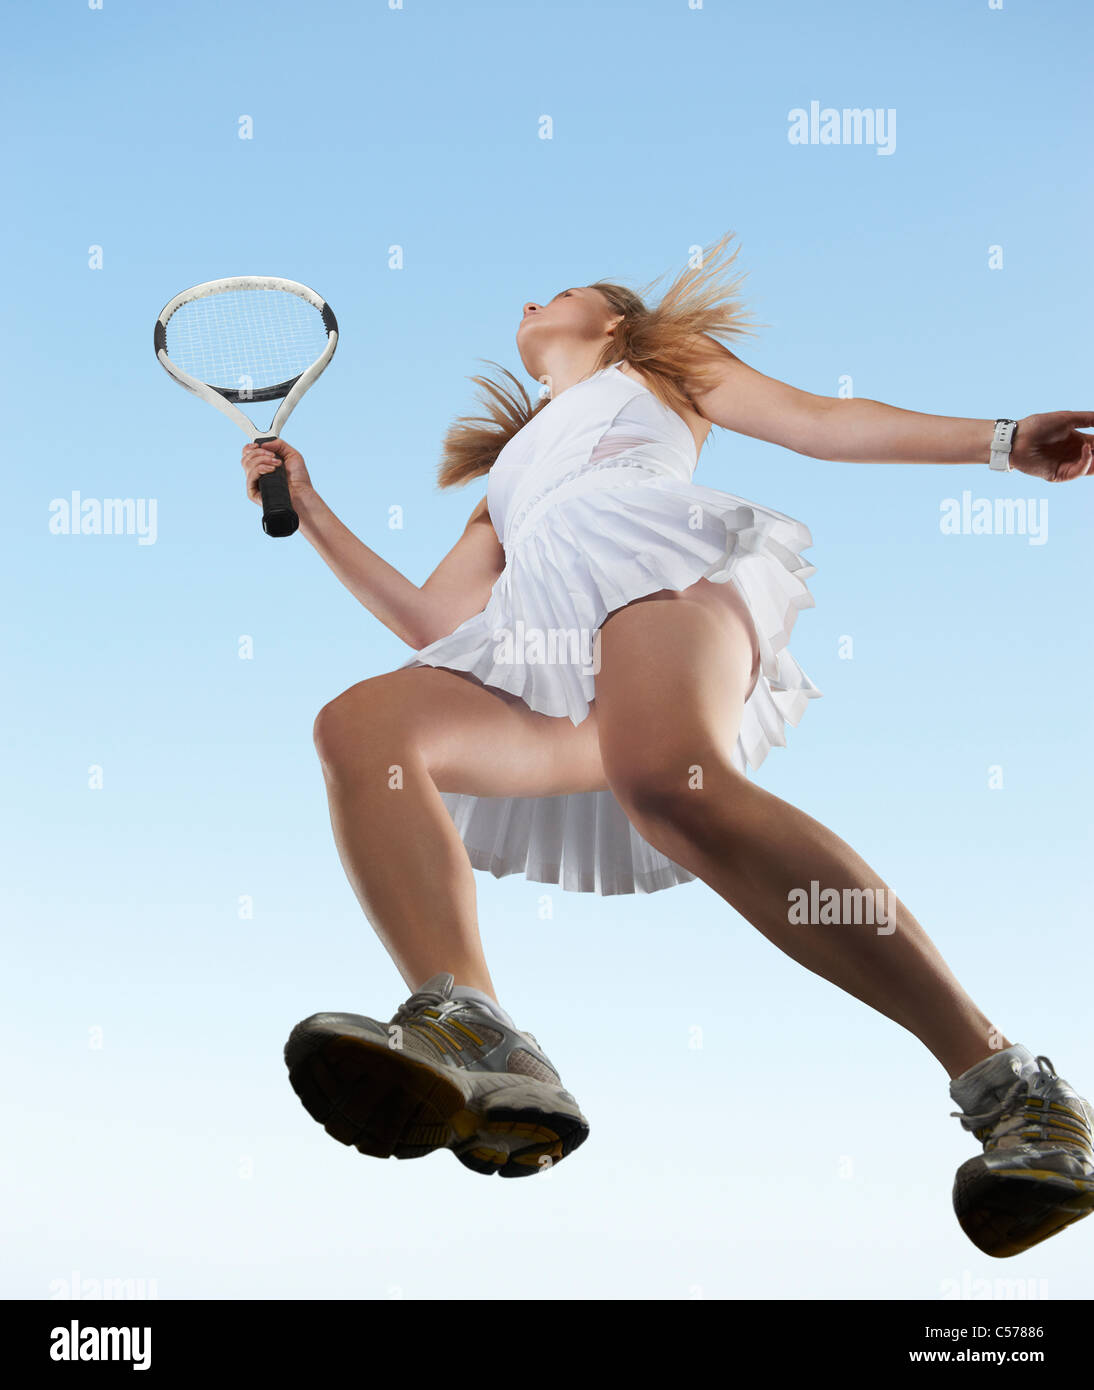 Basso angolo di visione della donna giocando a tennis Foto Stock